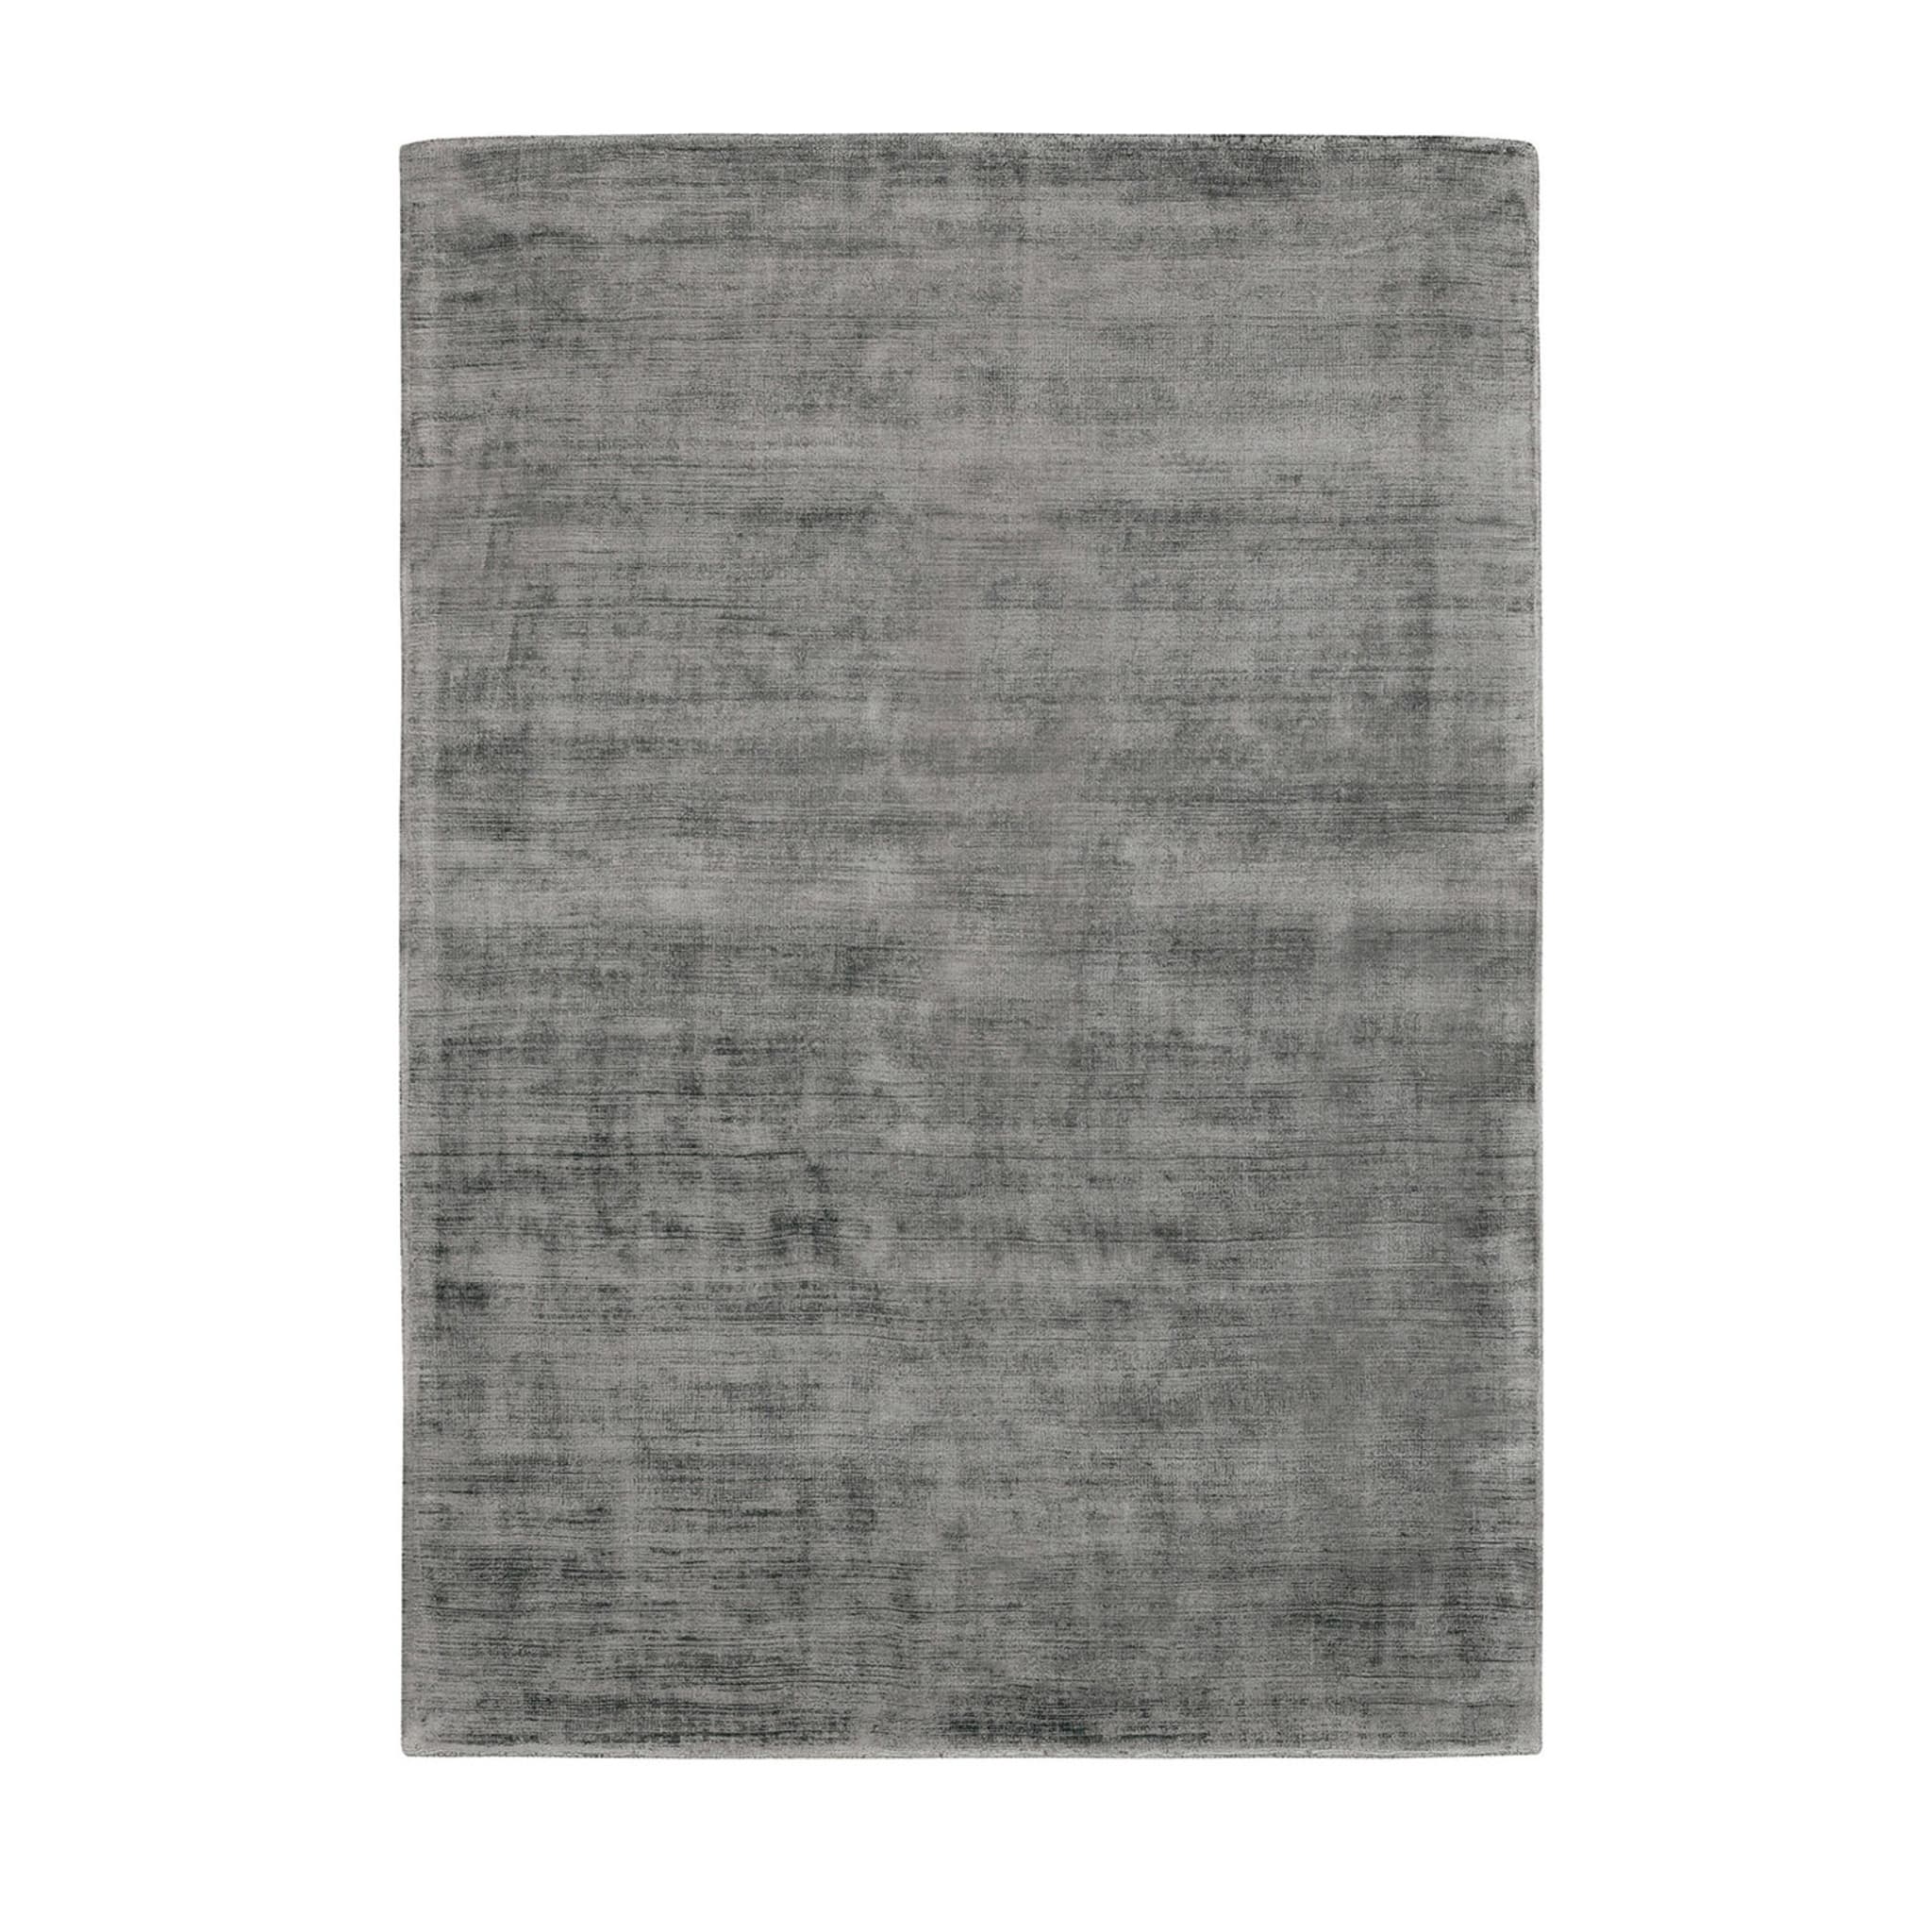 Trendiger glänzender grauer Teppich - Hauptansicht